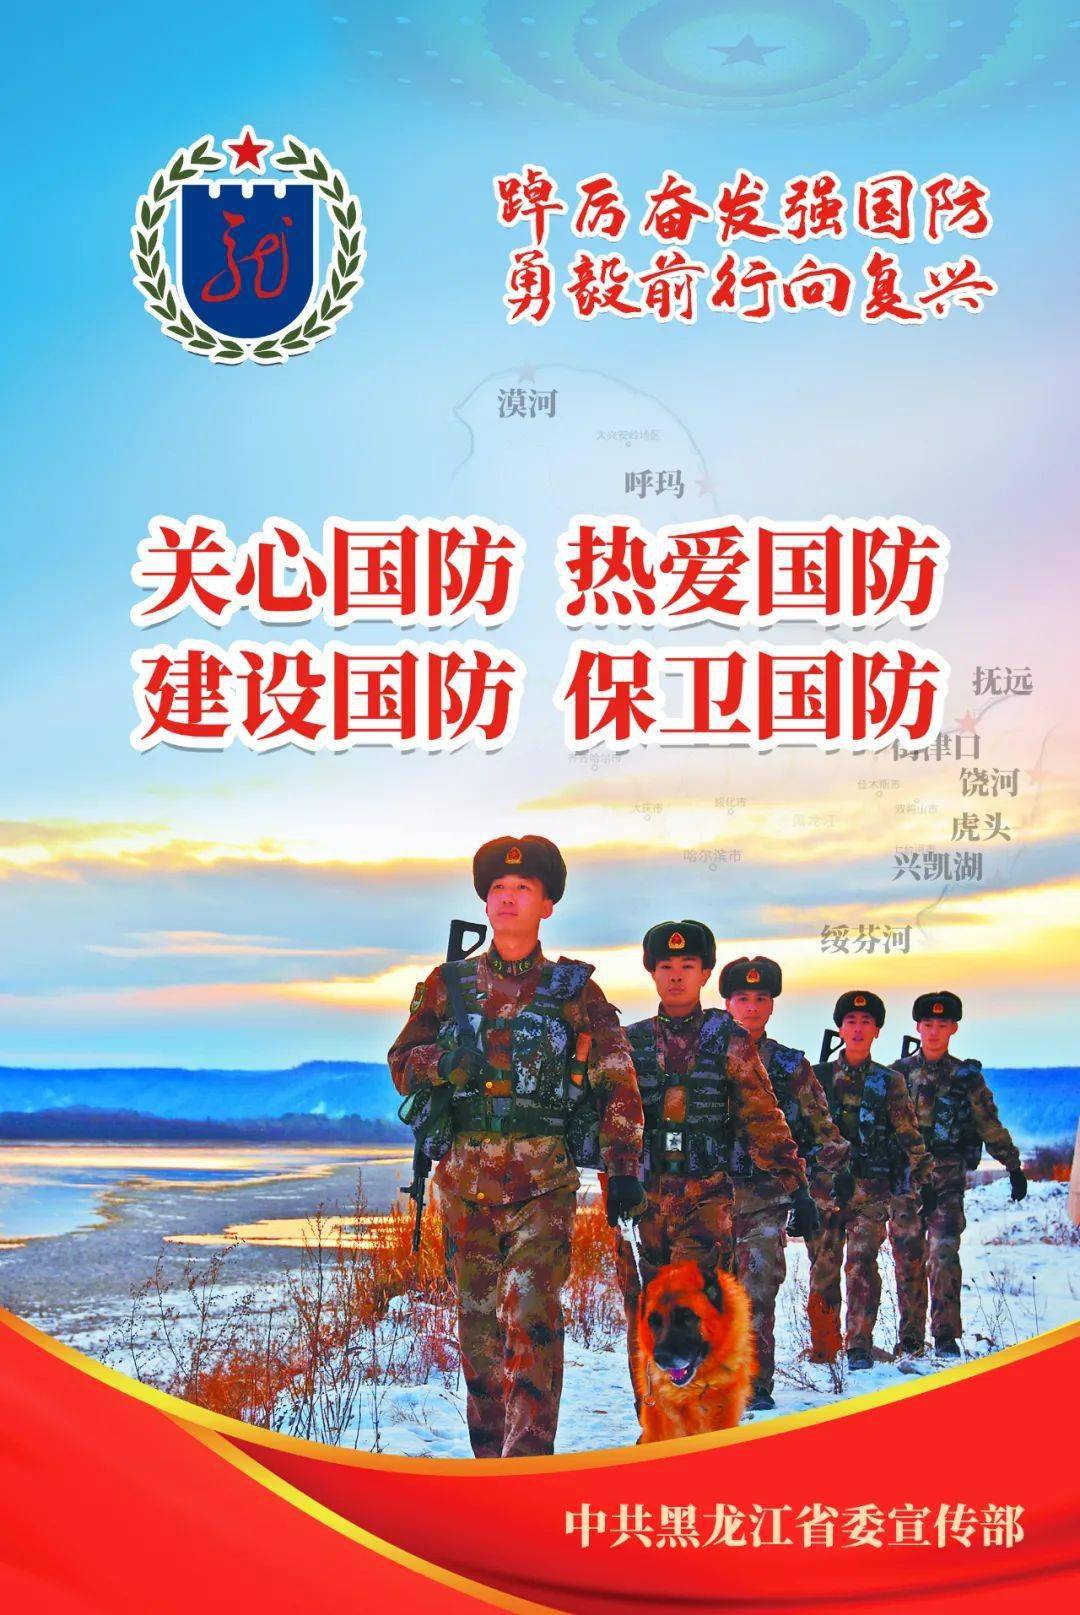 全民国防教育日丨国防教育宣传海报